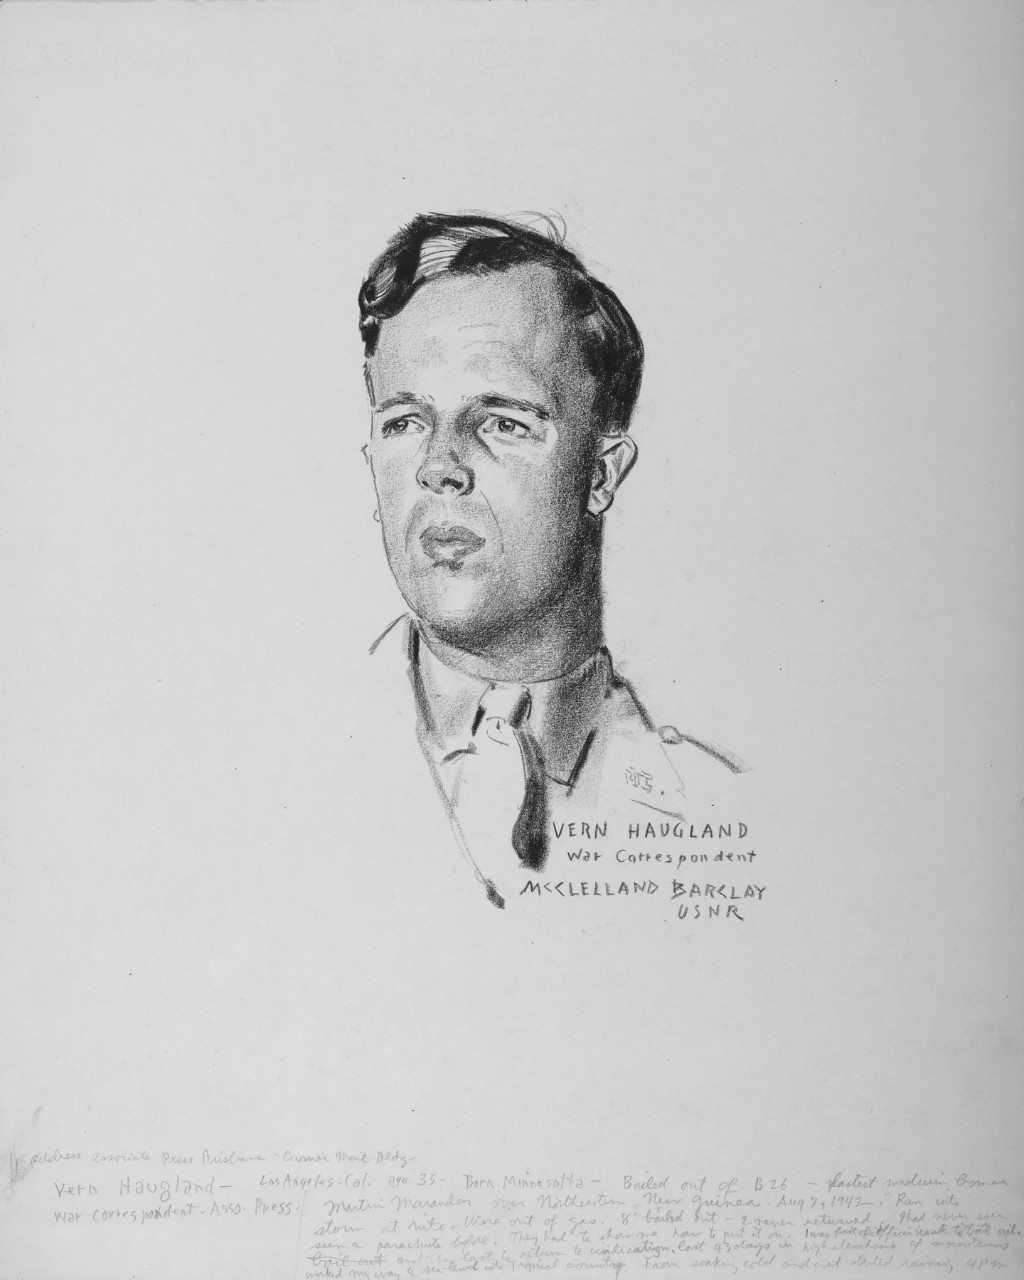 Portrait of Vern Haugland, War Correspondent